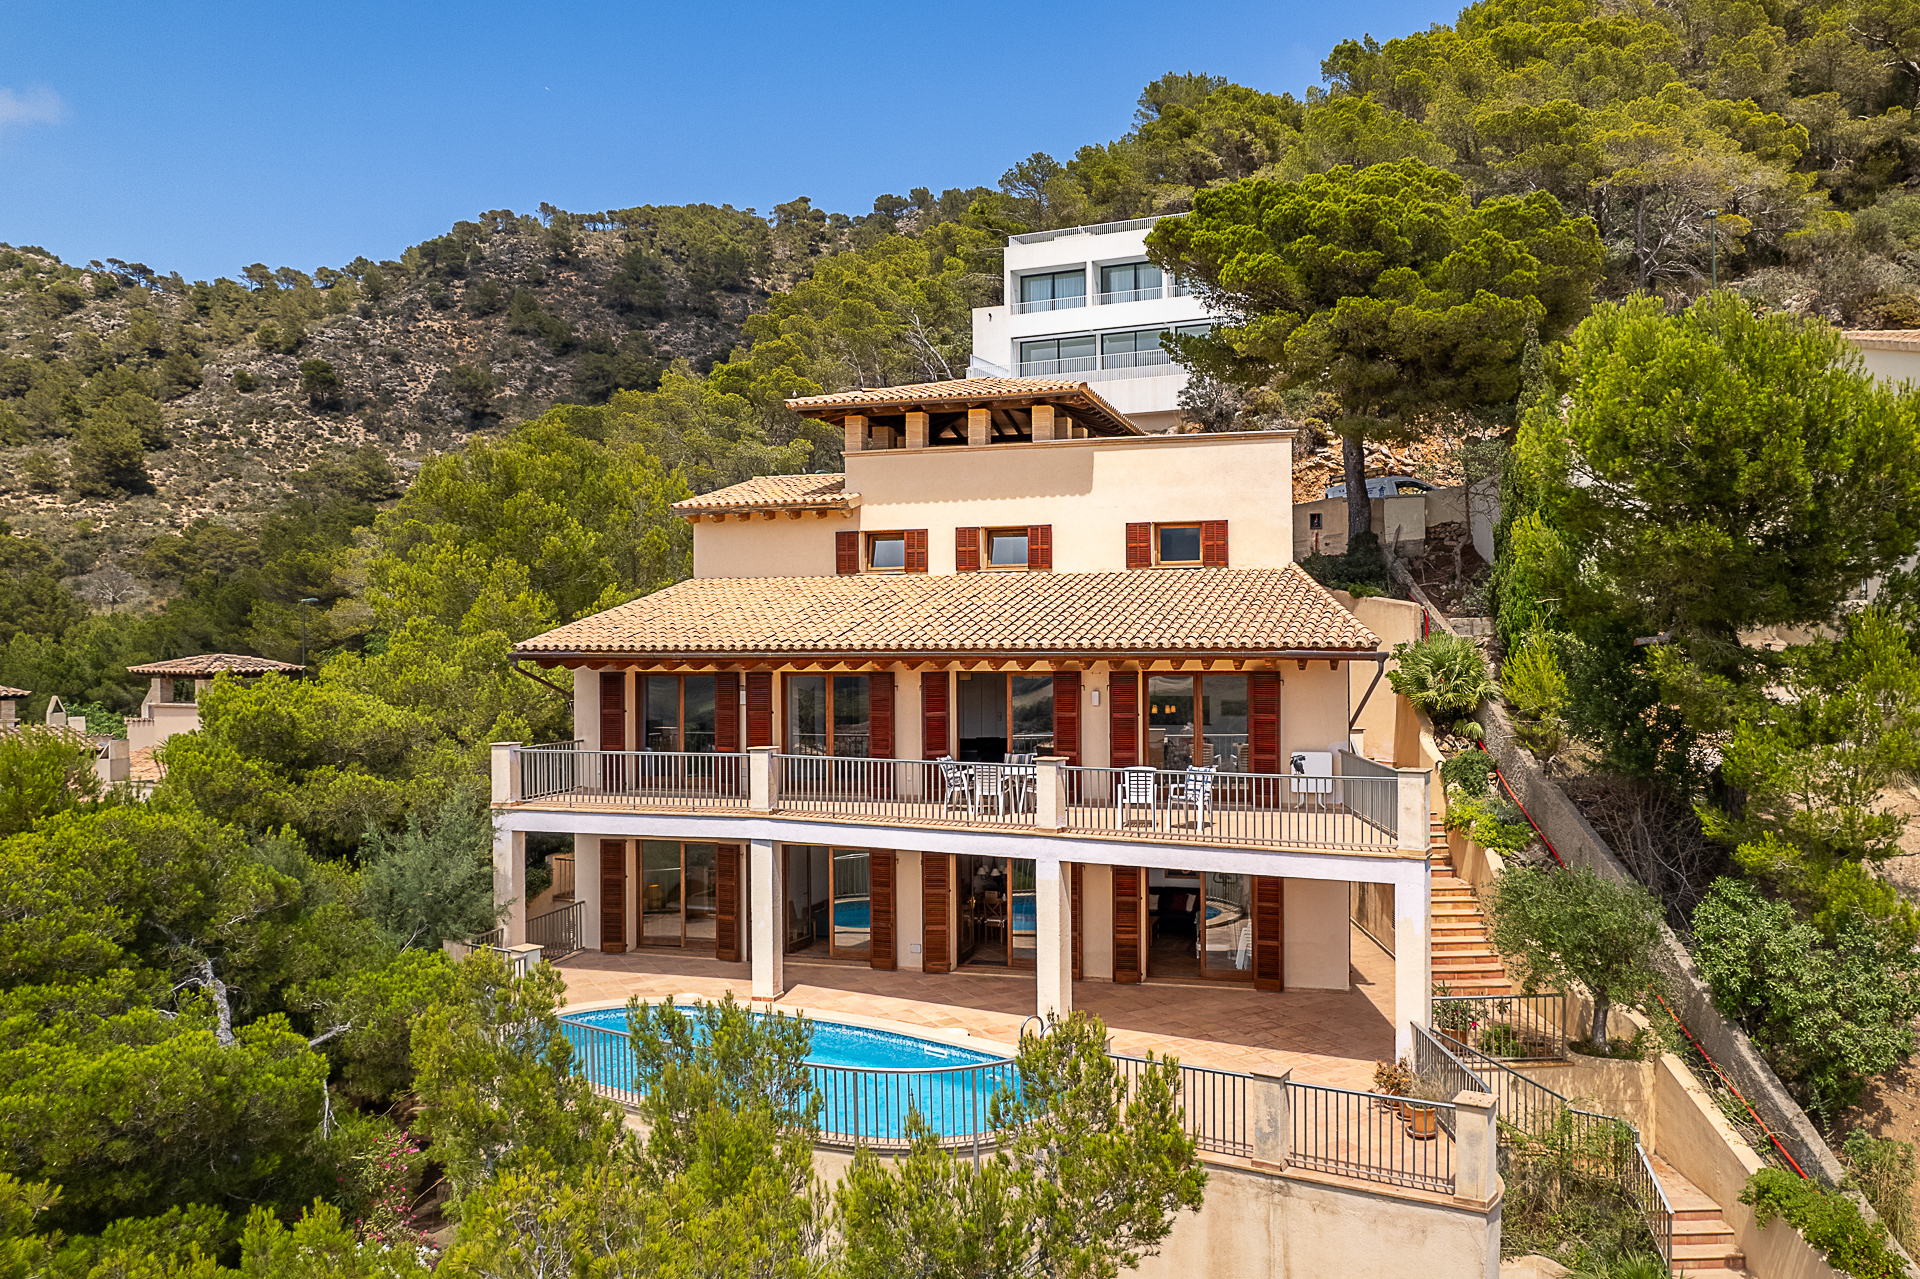 Exclusiva villa en una ladera: vistas panorámicas, piscina, garaje y amplios espacios habitables, 07589 Canyamel (España), Chalet